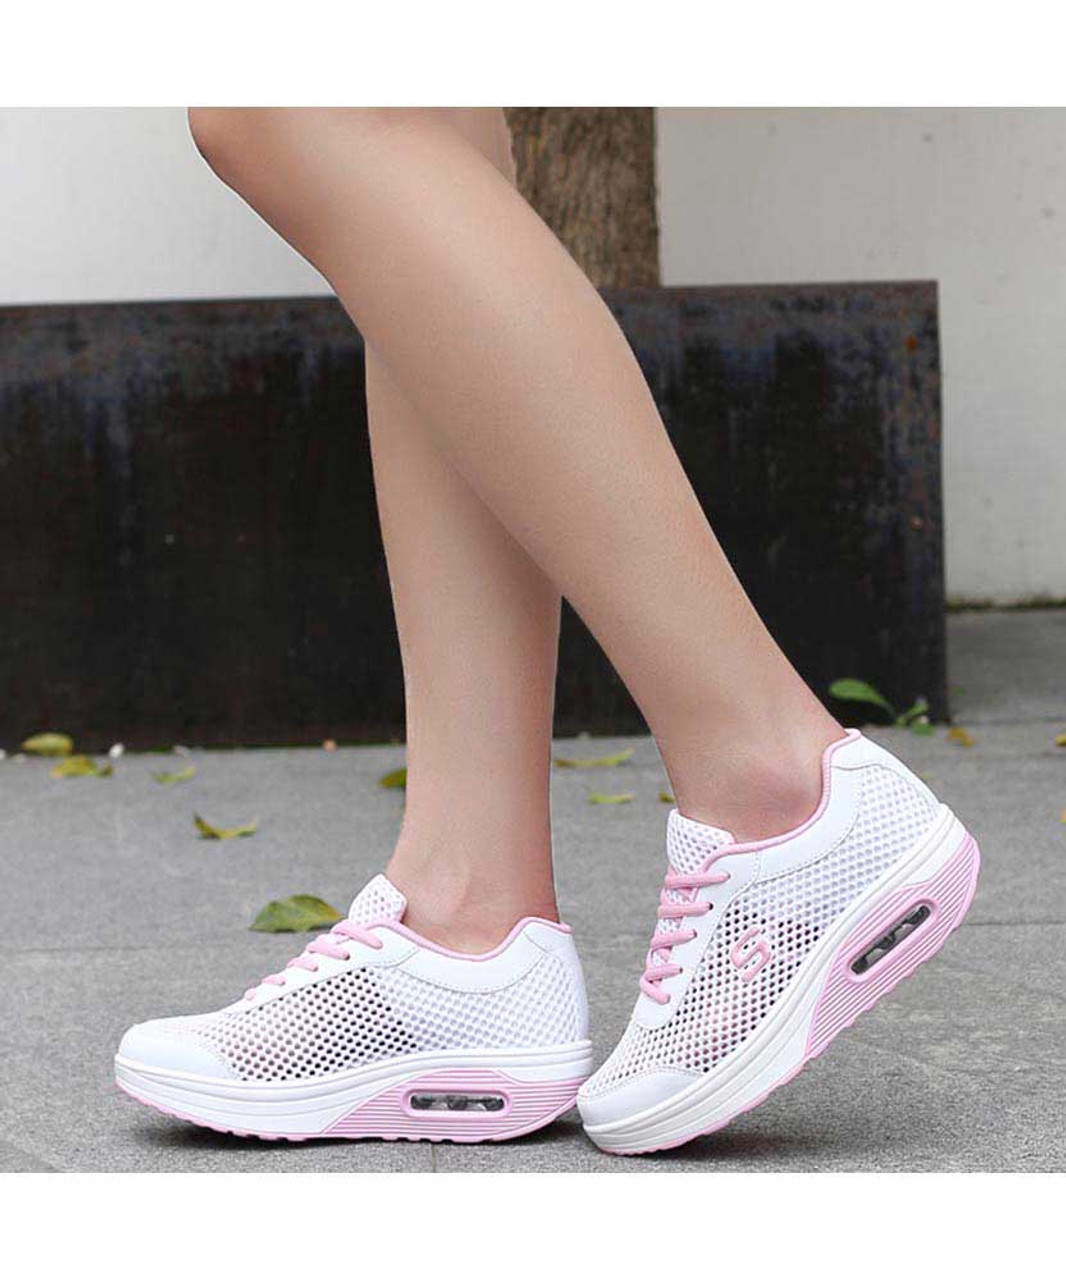 Pink white hollow cut rocker bottom shoe sneaker | Womens rocker shoes ...